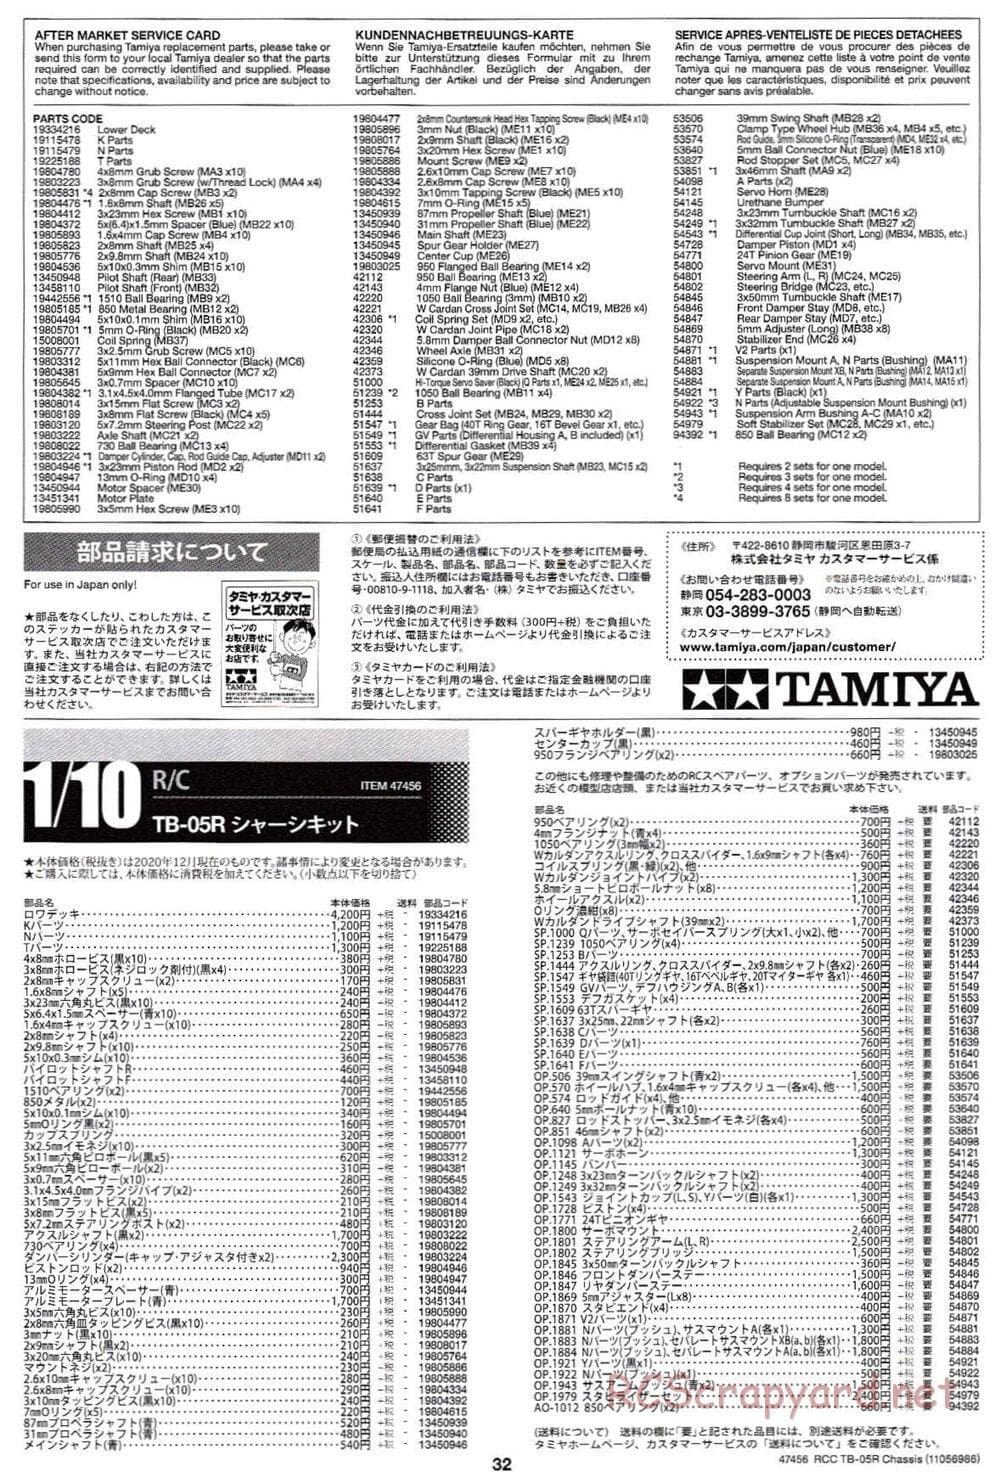 Tamiya - TB-05R Chassis - Manual - Page 32